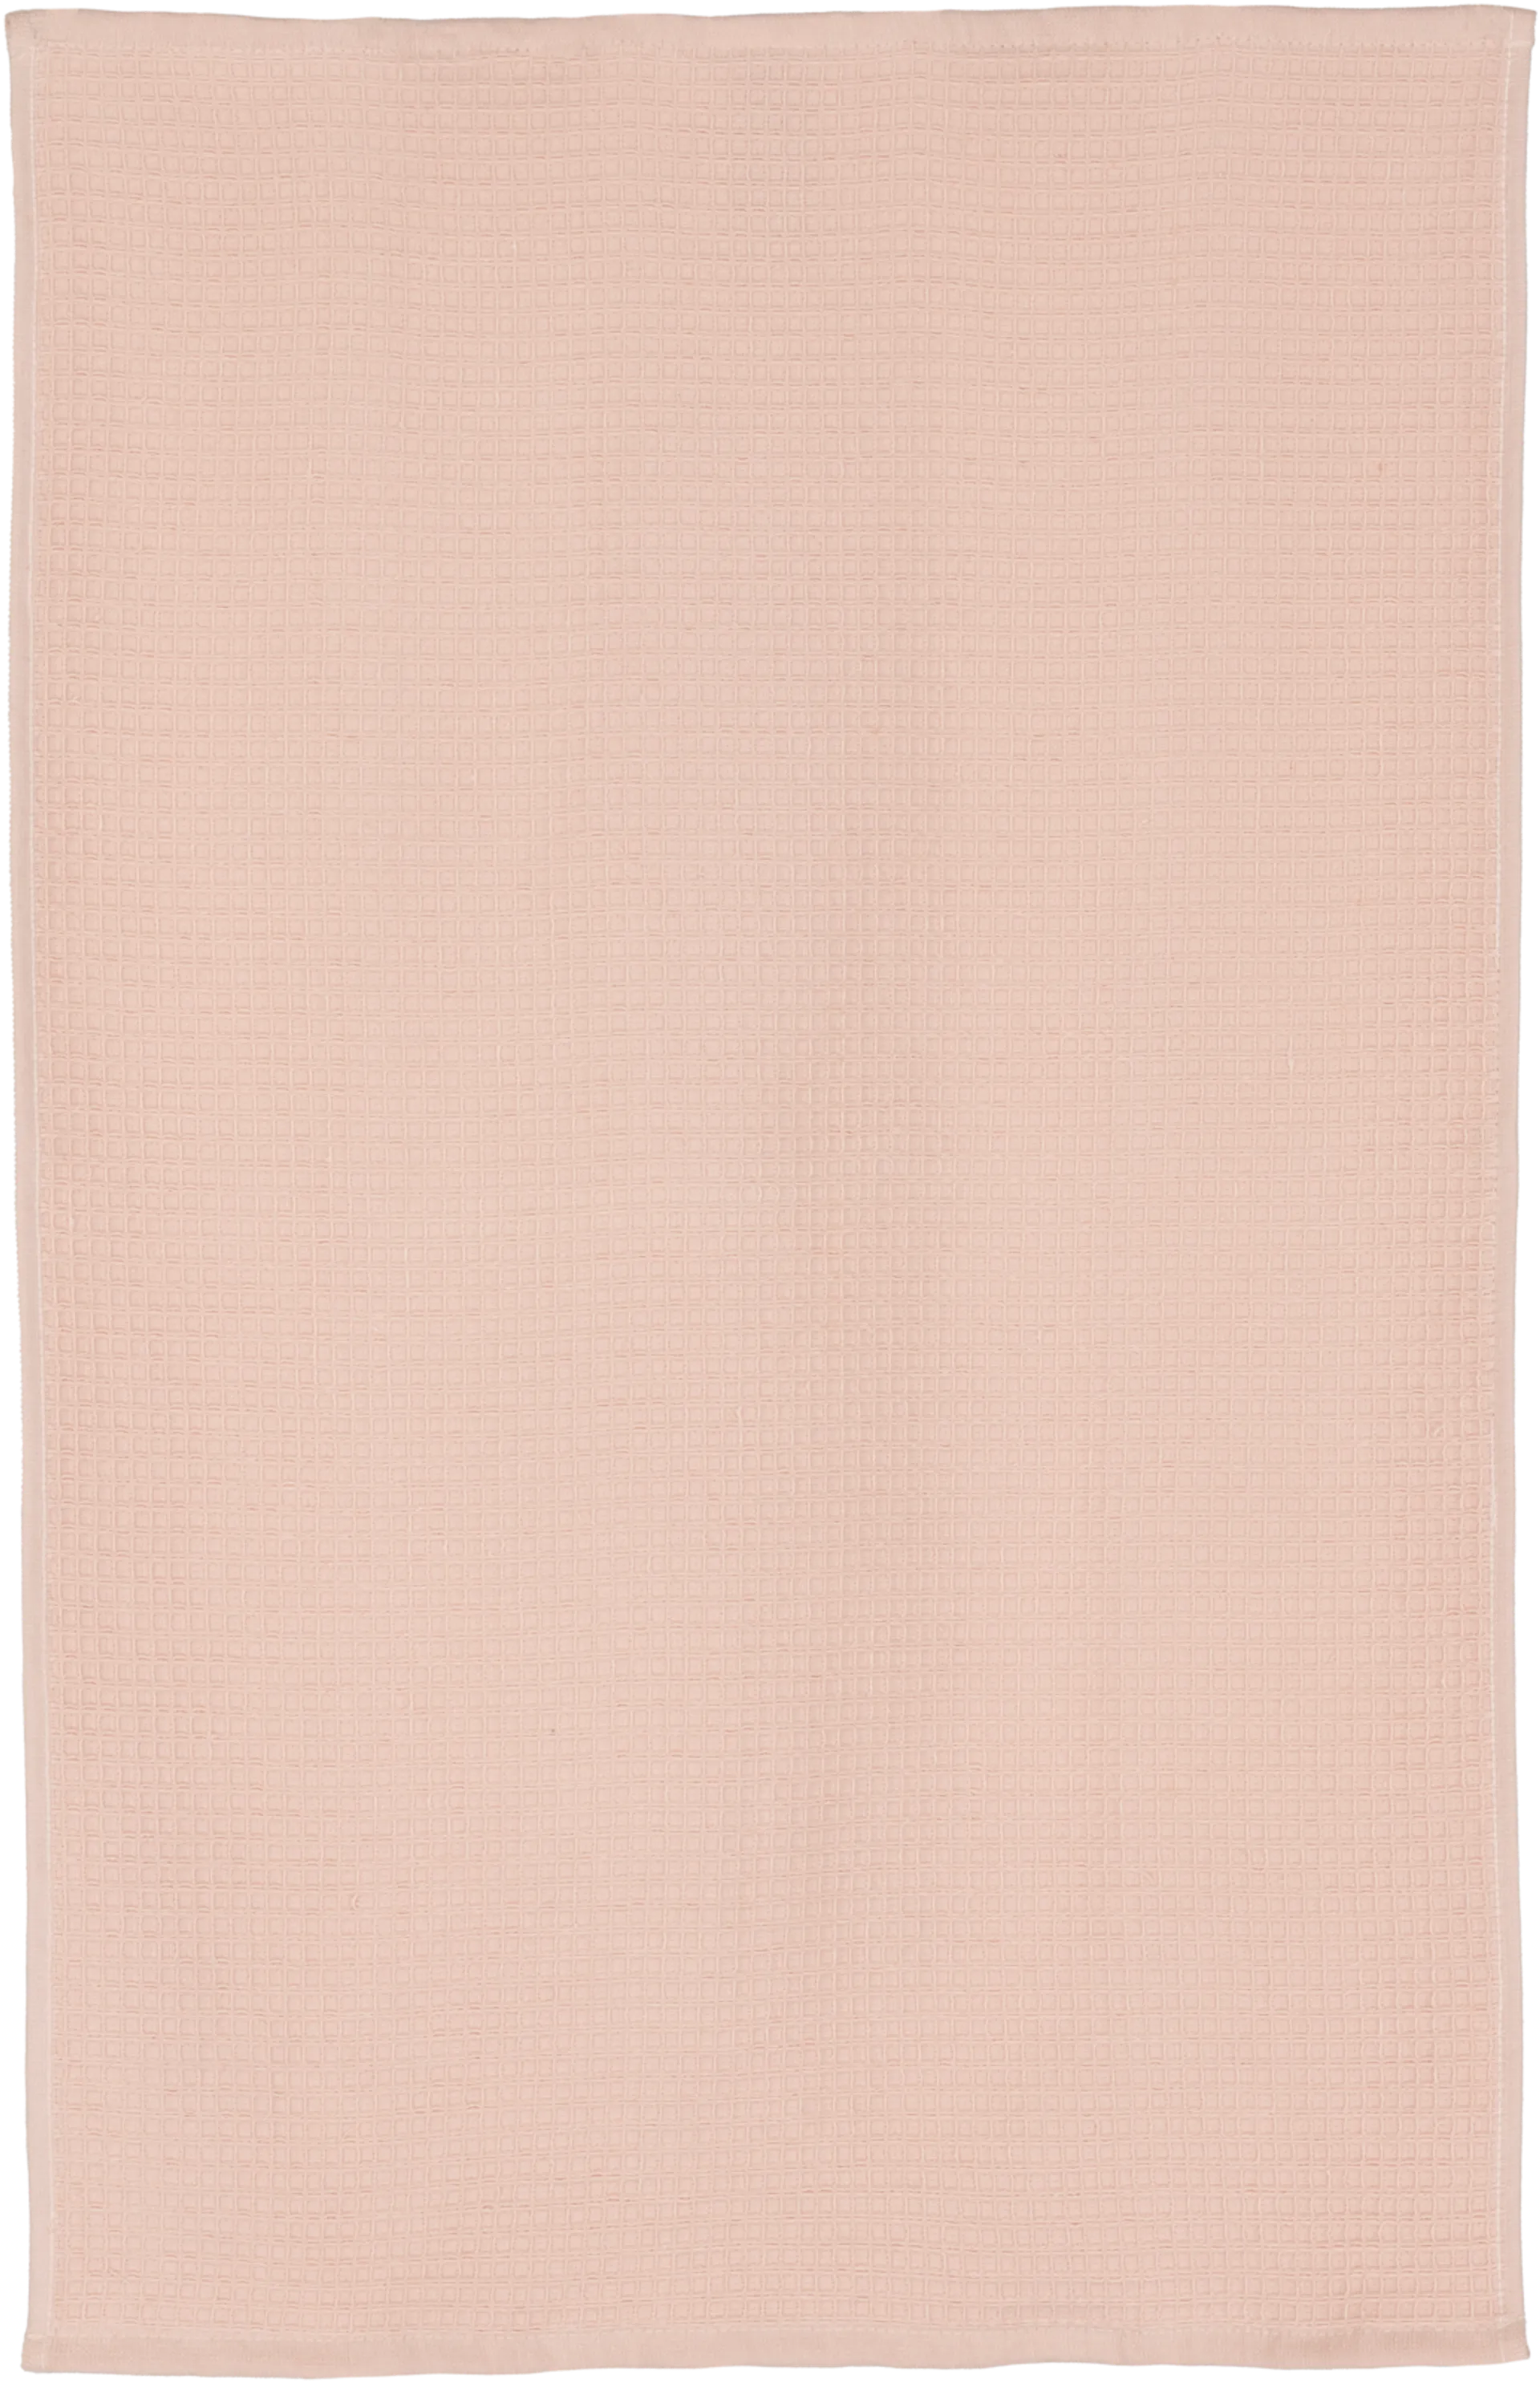 House käsipyyhe Vohveli 50 x 70 cm roosa